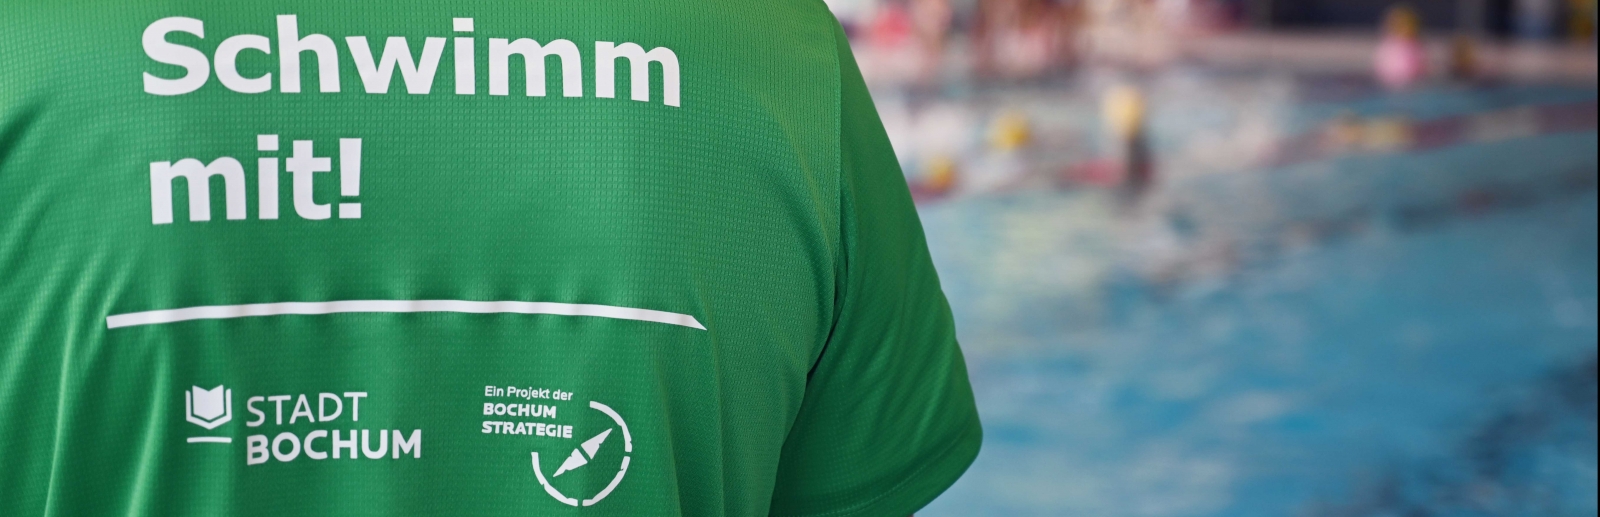 Eine Person im grünen T-Shirts mit der Rückenaufschrift "Schwimm mit!"